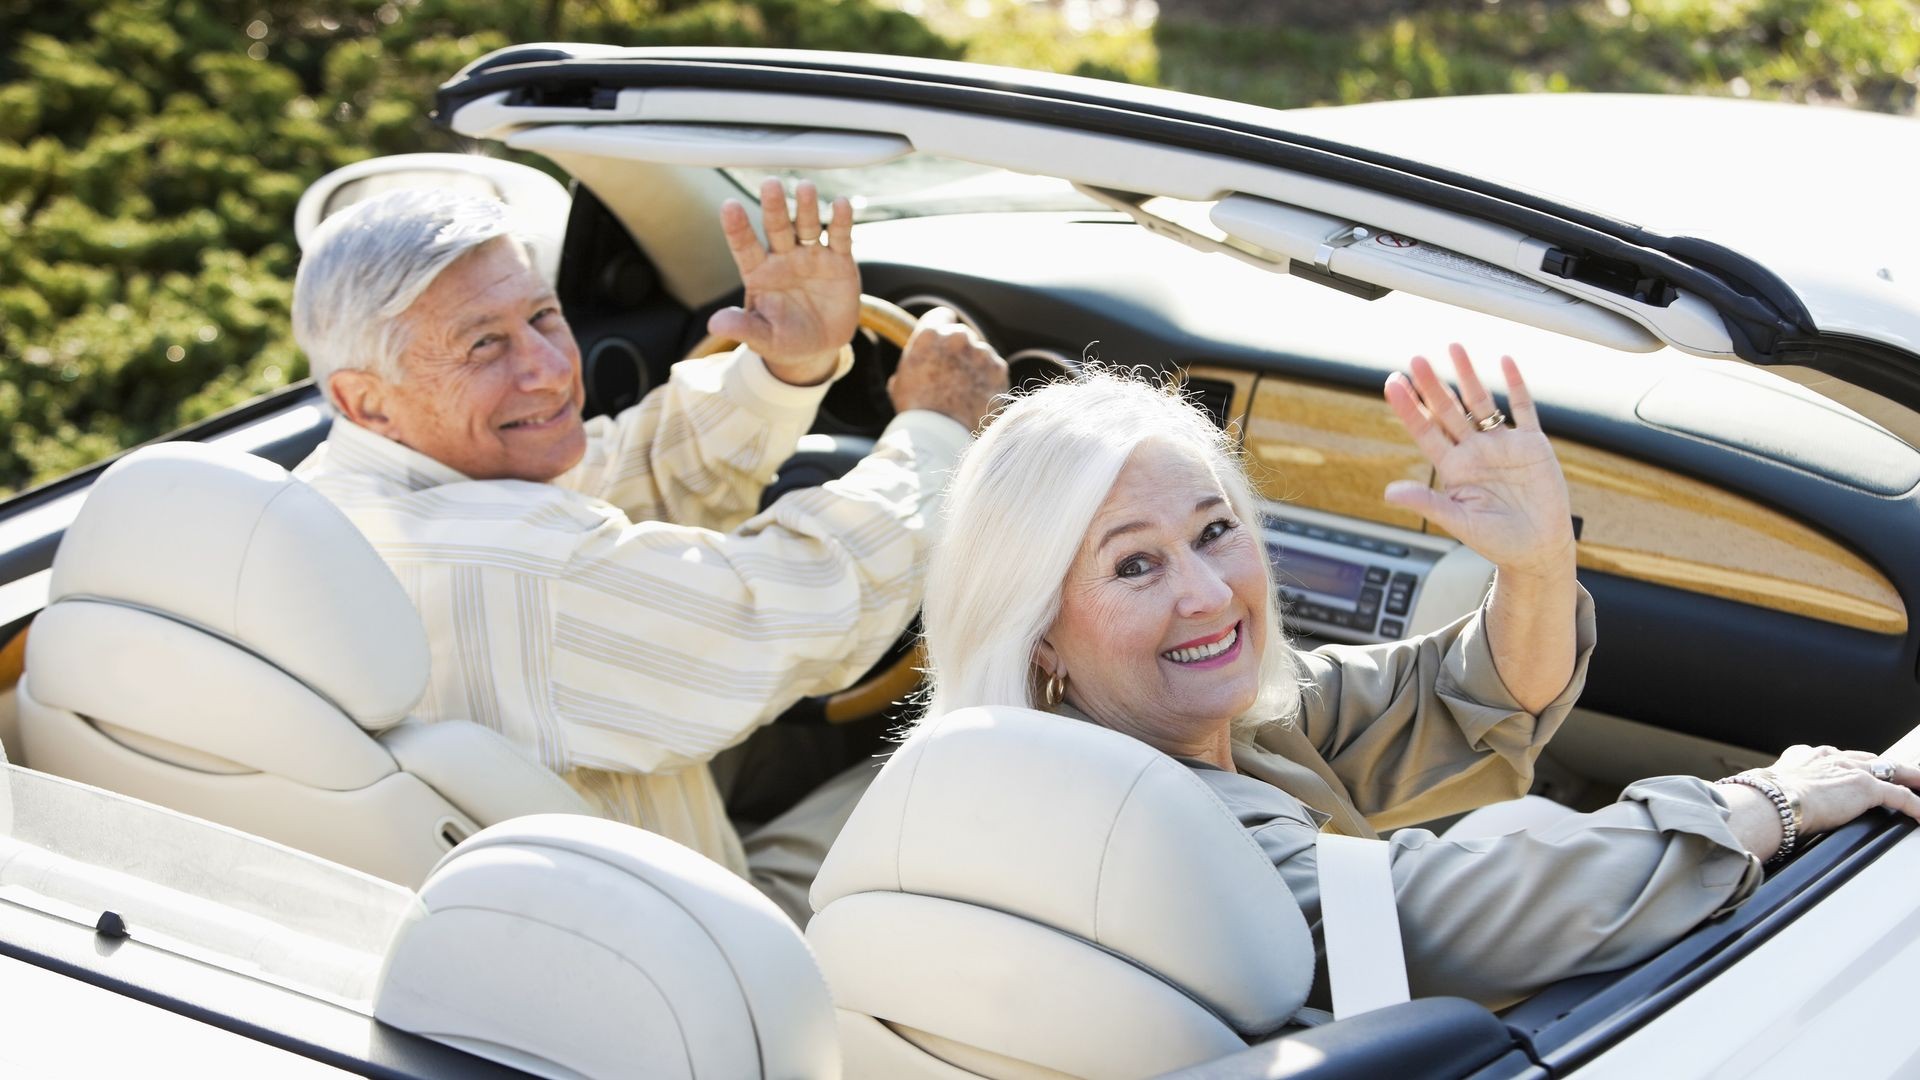 Аренда автомобиля для пожилых людей: советы для комфортного путешествия